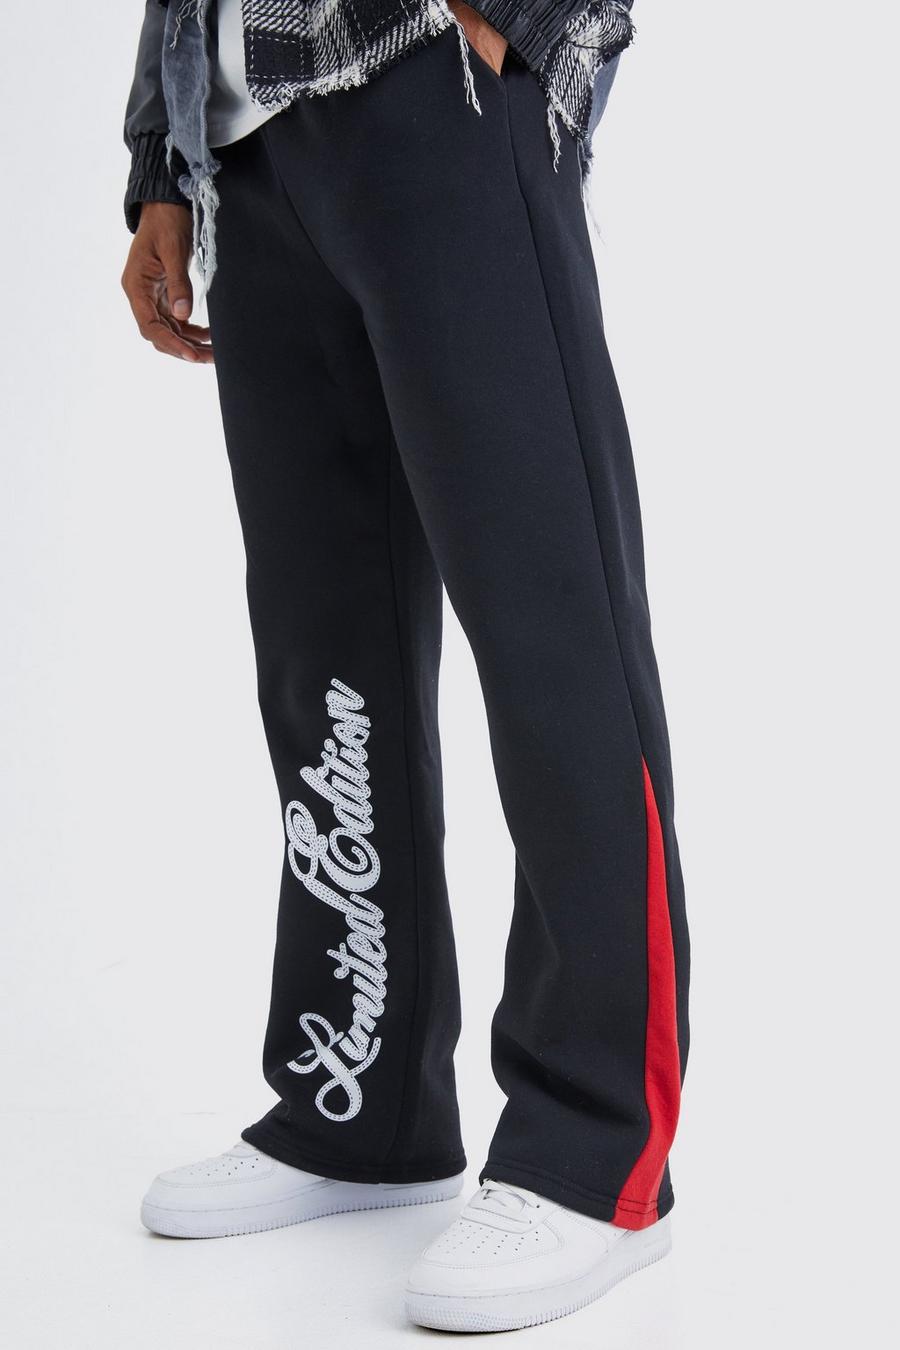 Pantaloni tuta Limited Edition con inserti e scritta, Black image number 1